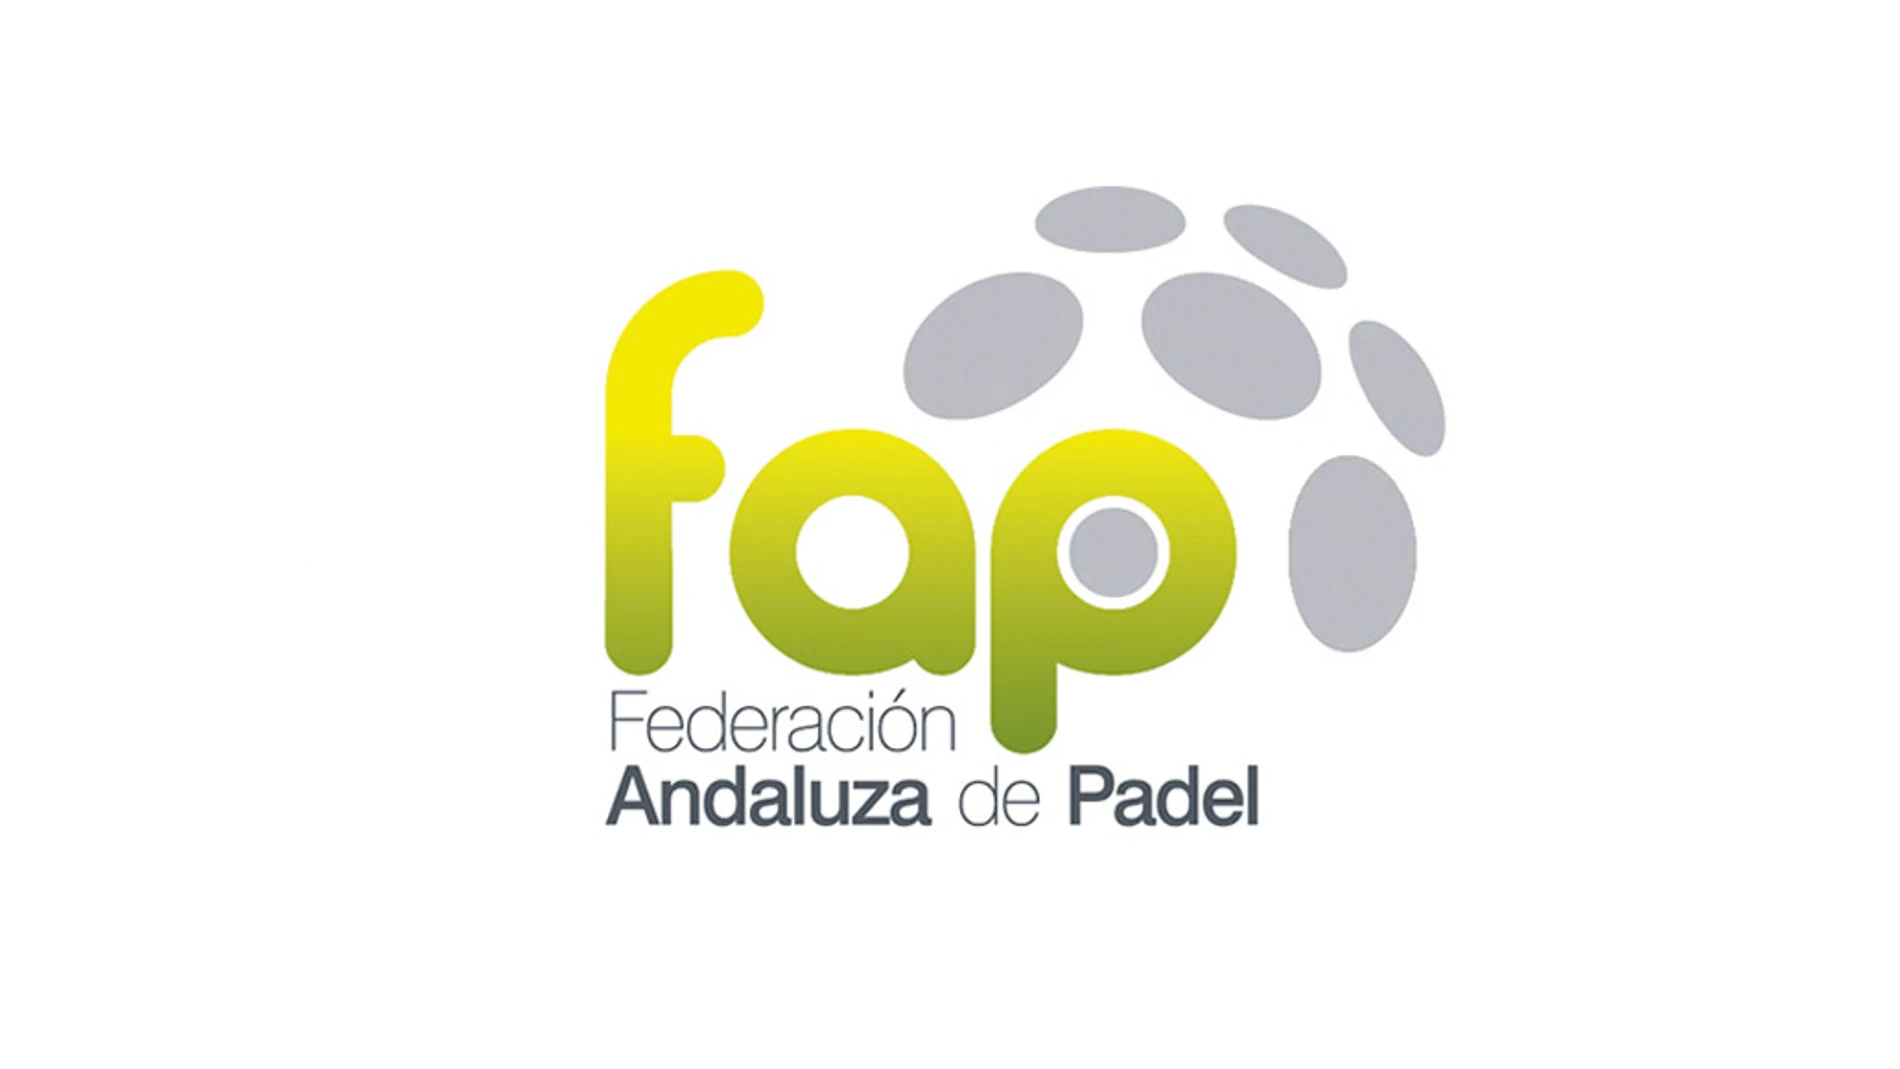 Federación Andaluza de Pádel